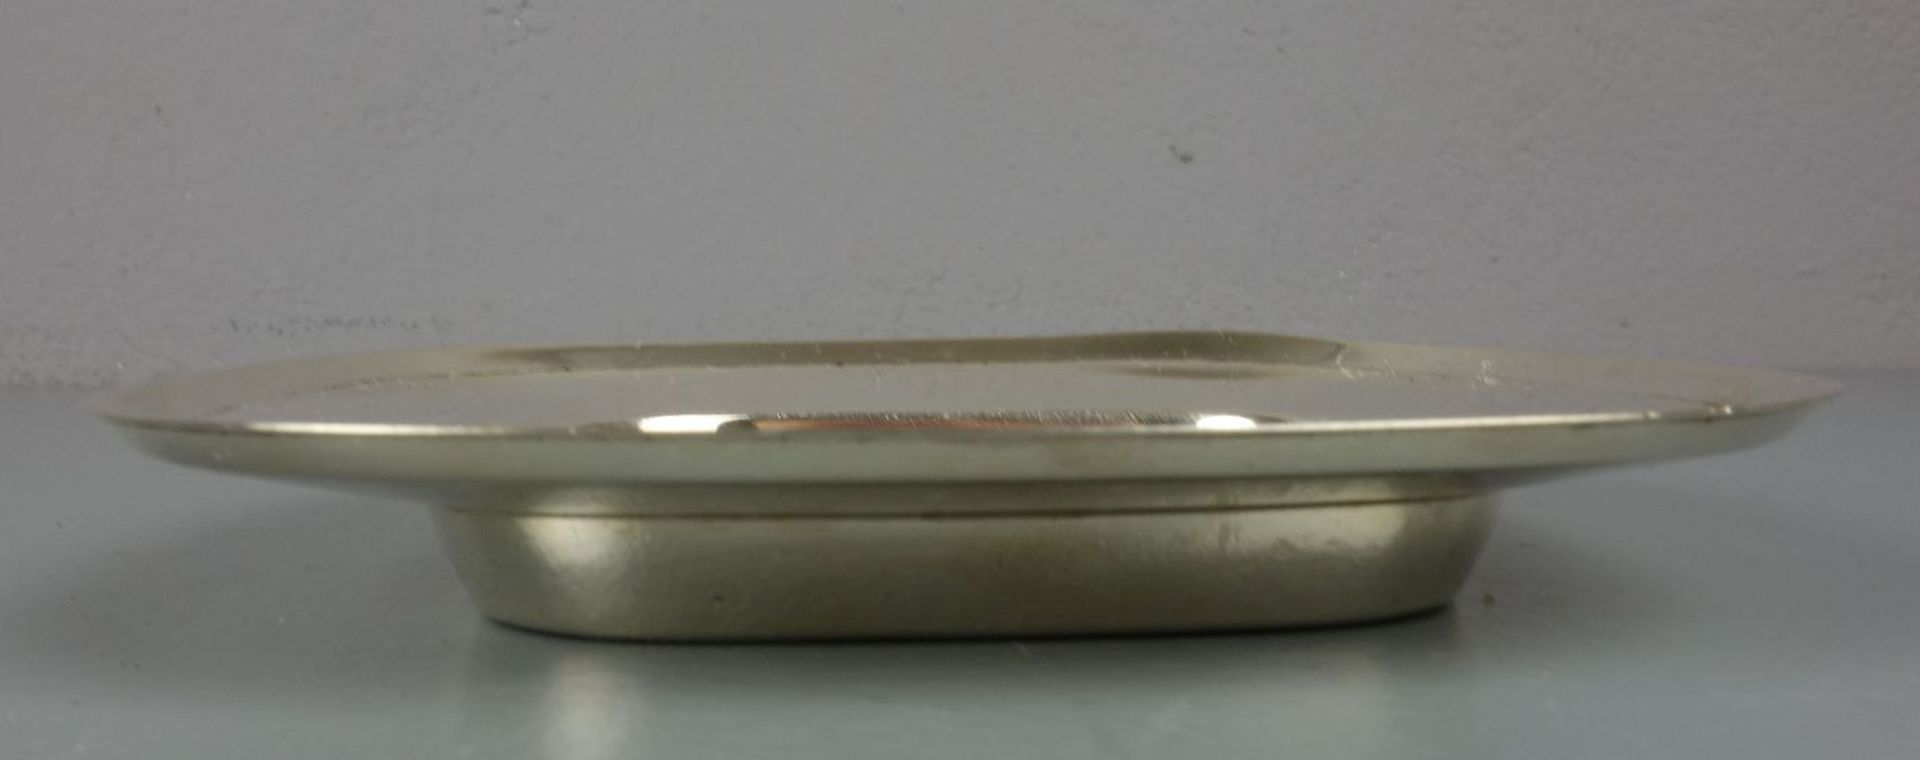 SCHALE / KARREESCHALE / silver bowl, 925er Silber (122 g), bezeichnet "Sterling", gepunzt mit - Bild 3 aus 3